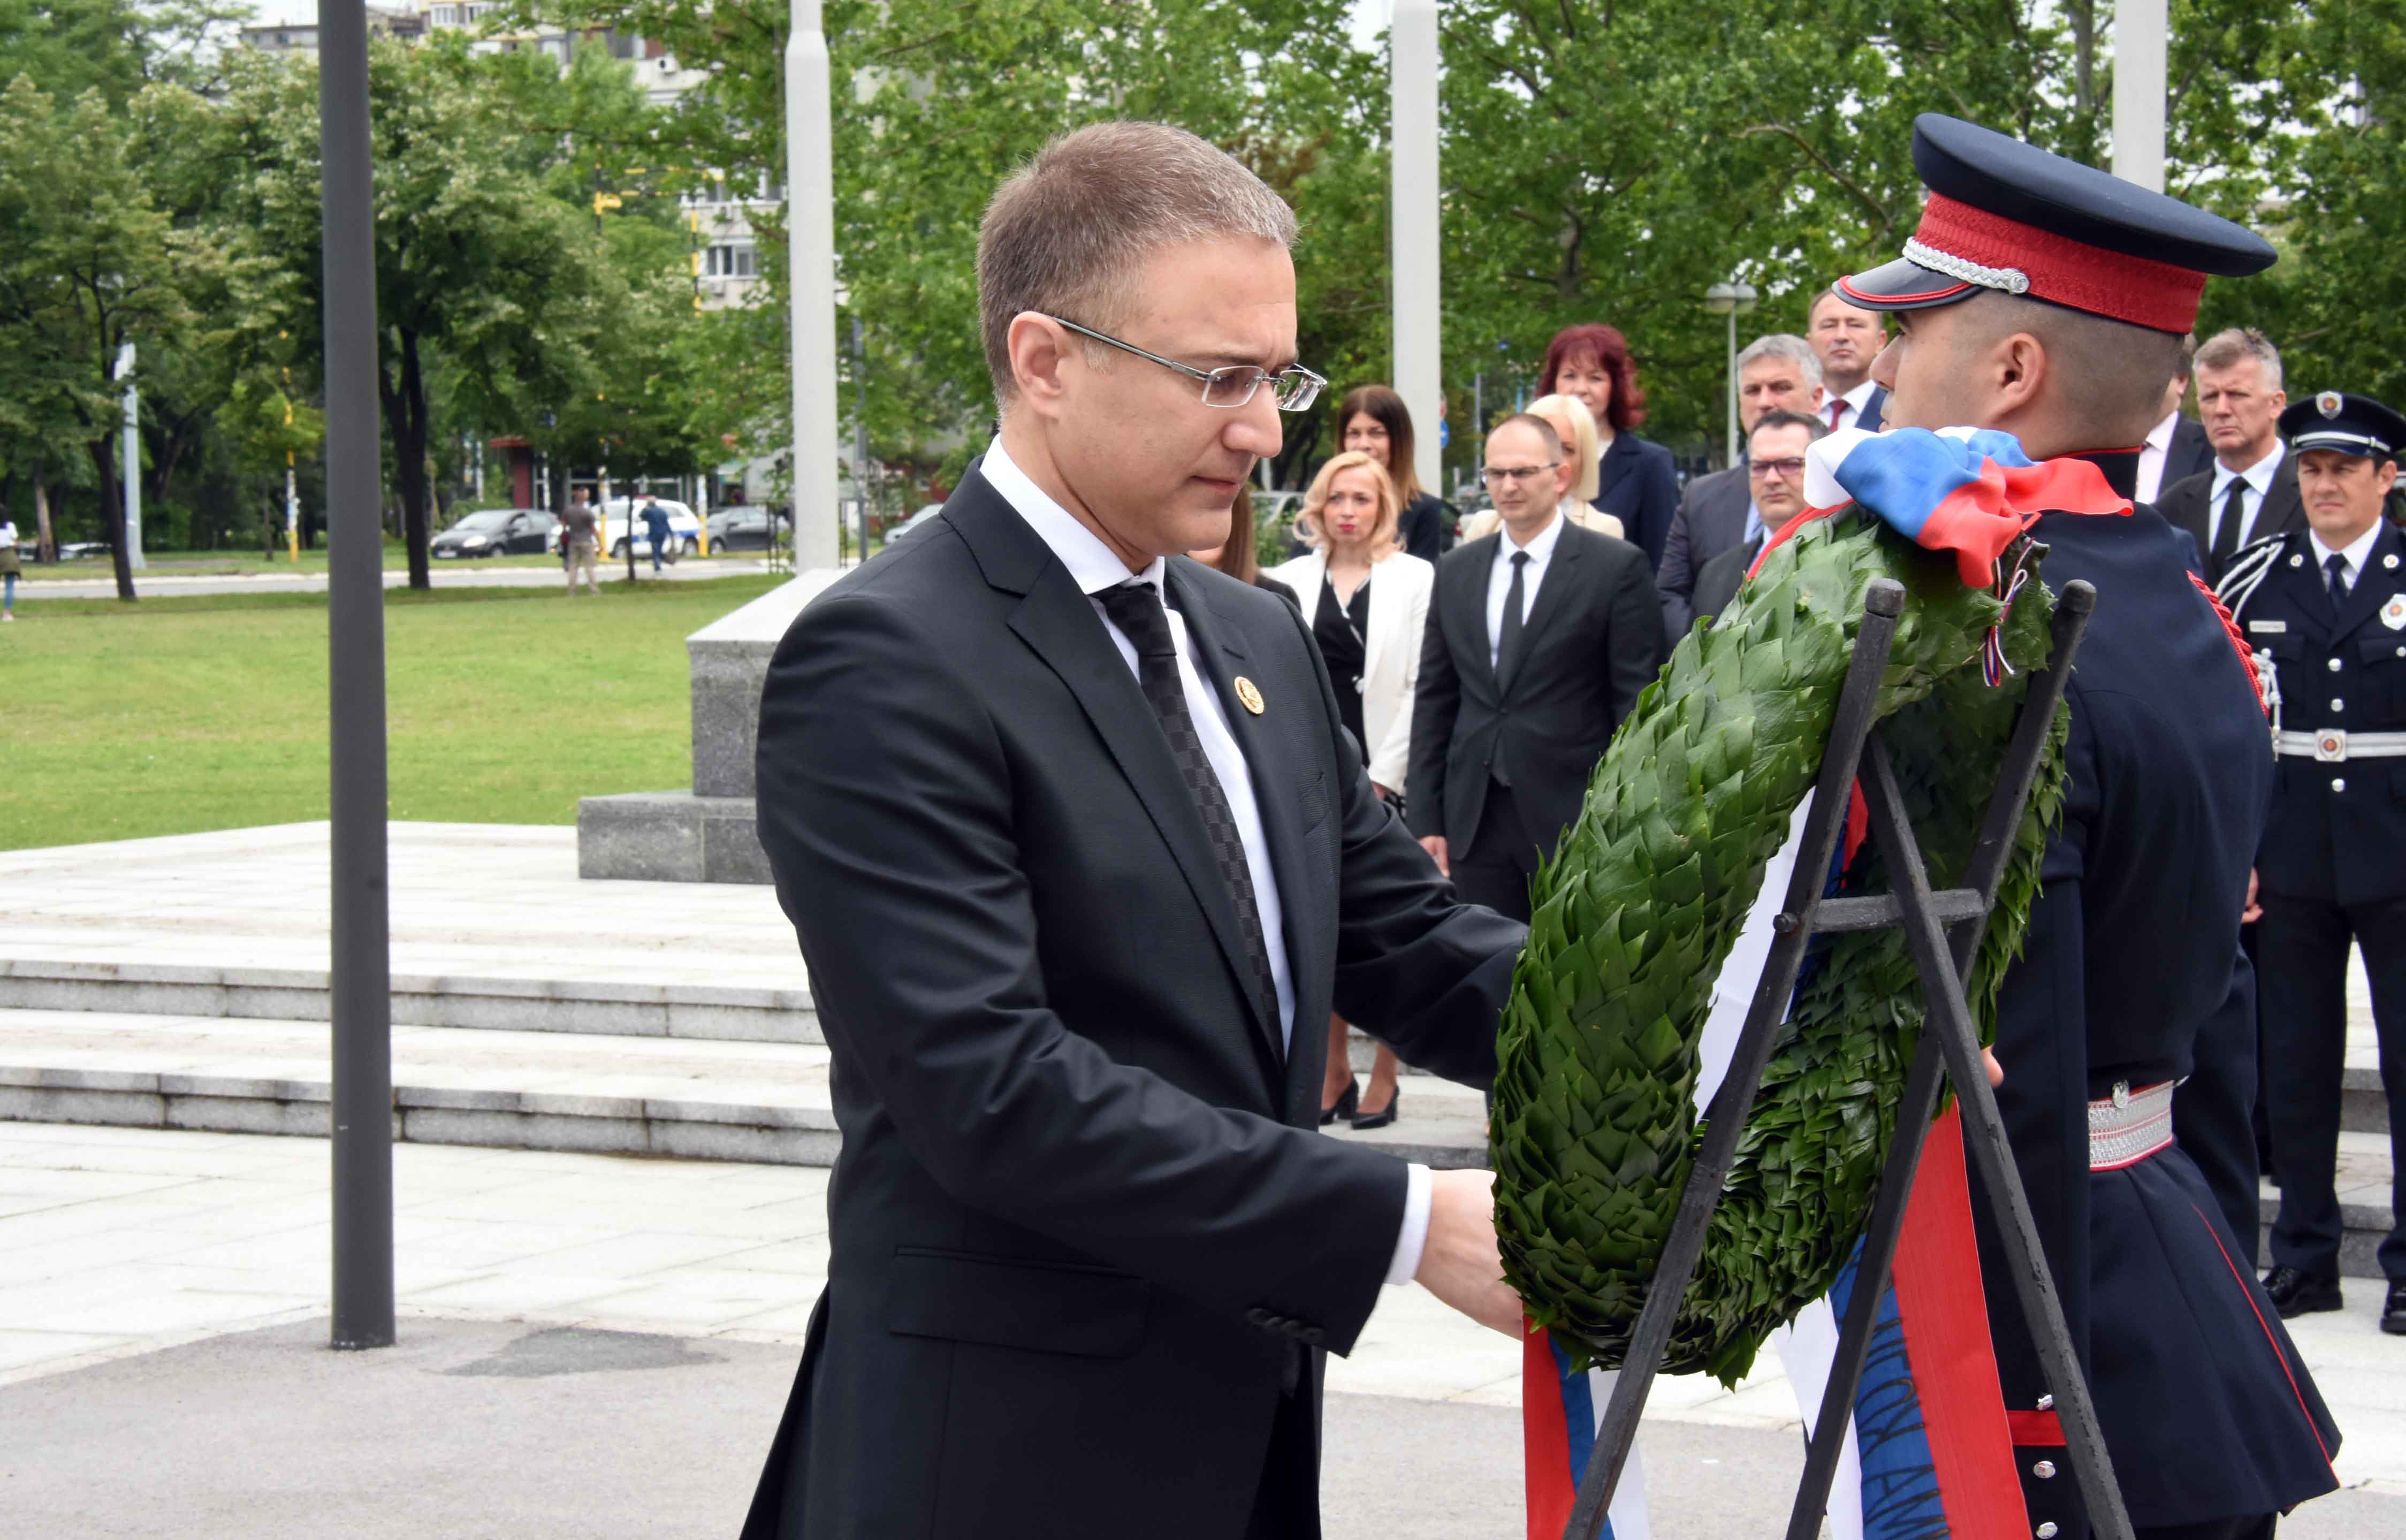 Mинистар Стефановић положио венац на спомен обележје припадницима Министарства унутрашњих послова који су погинули на дужности